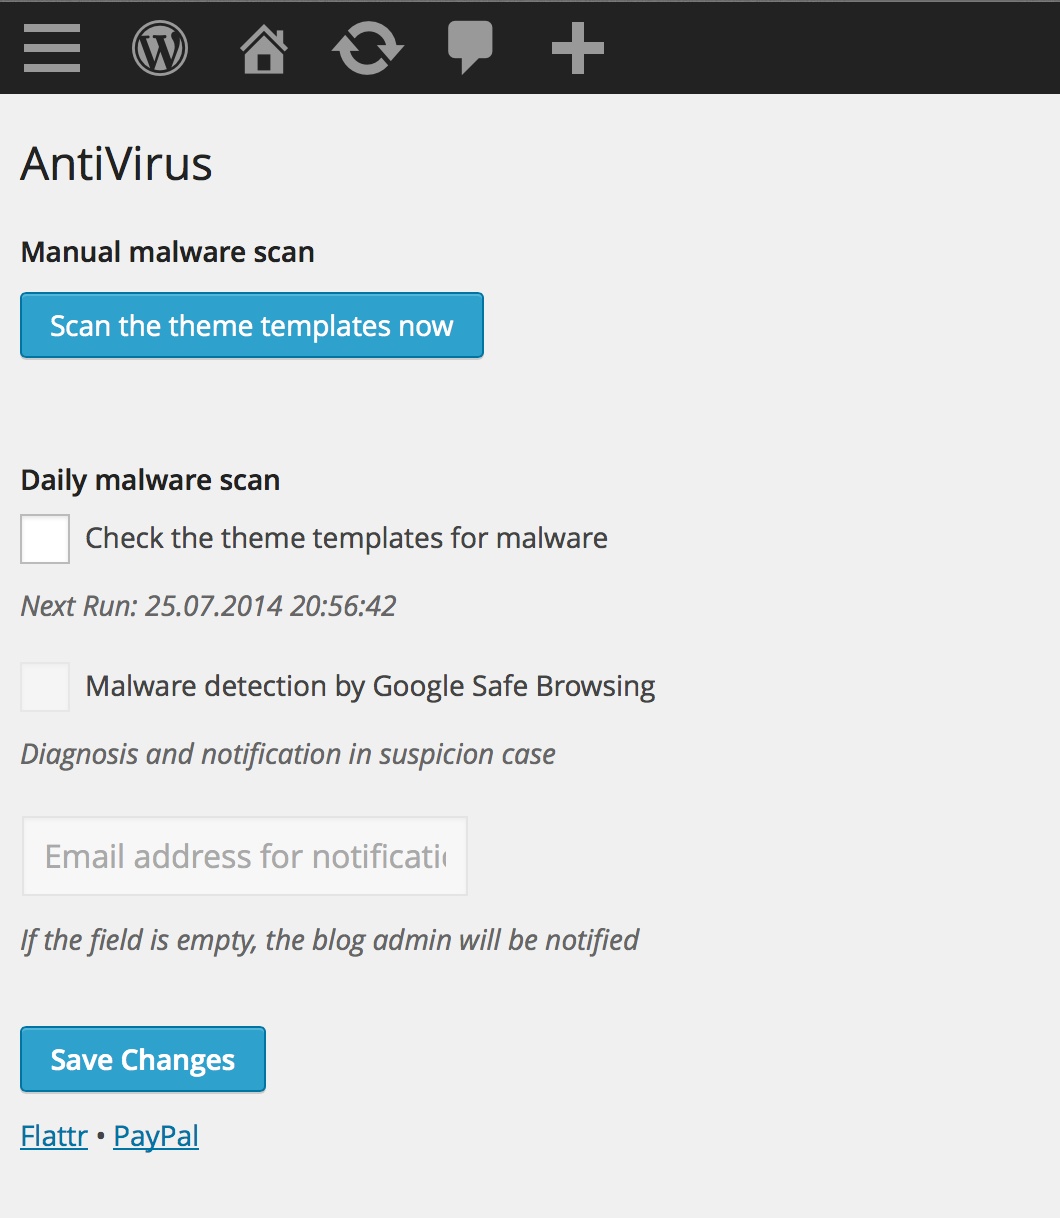 Download AntiVirus 1.3.9 – Free WordPress Plugin